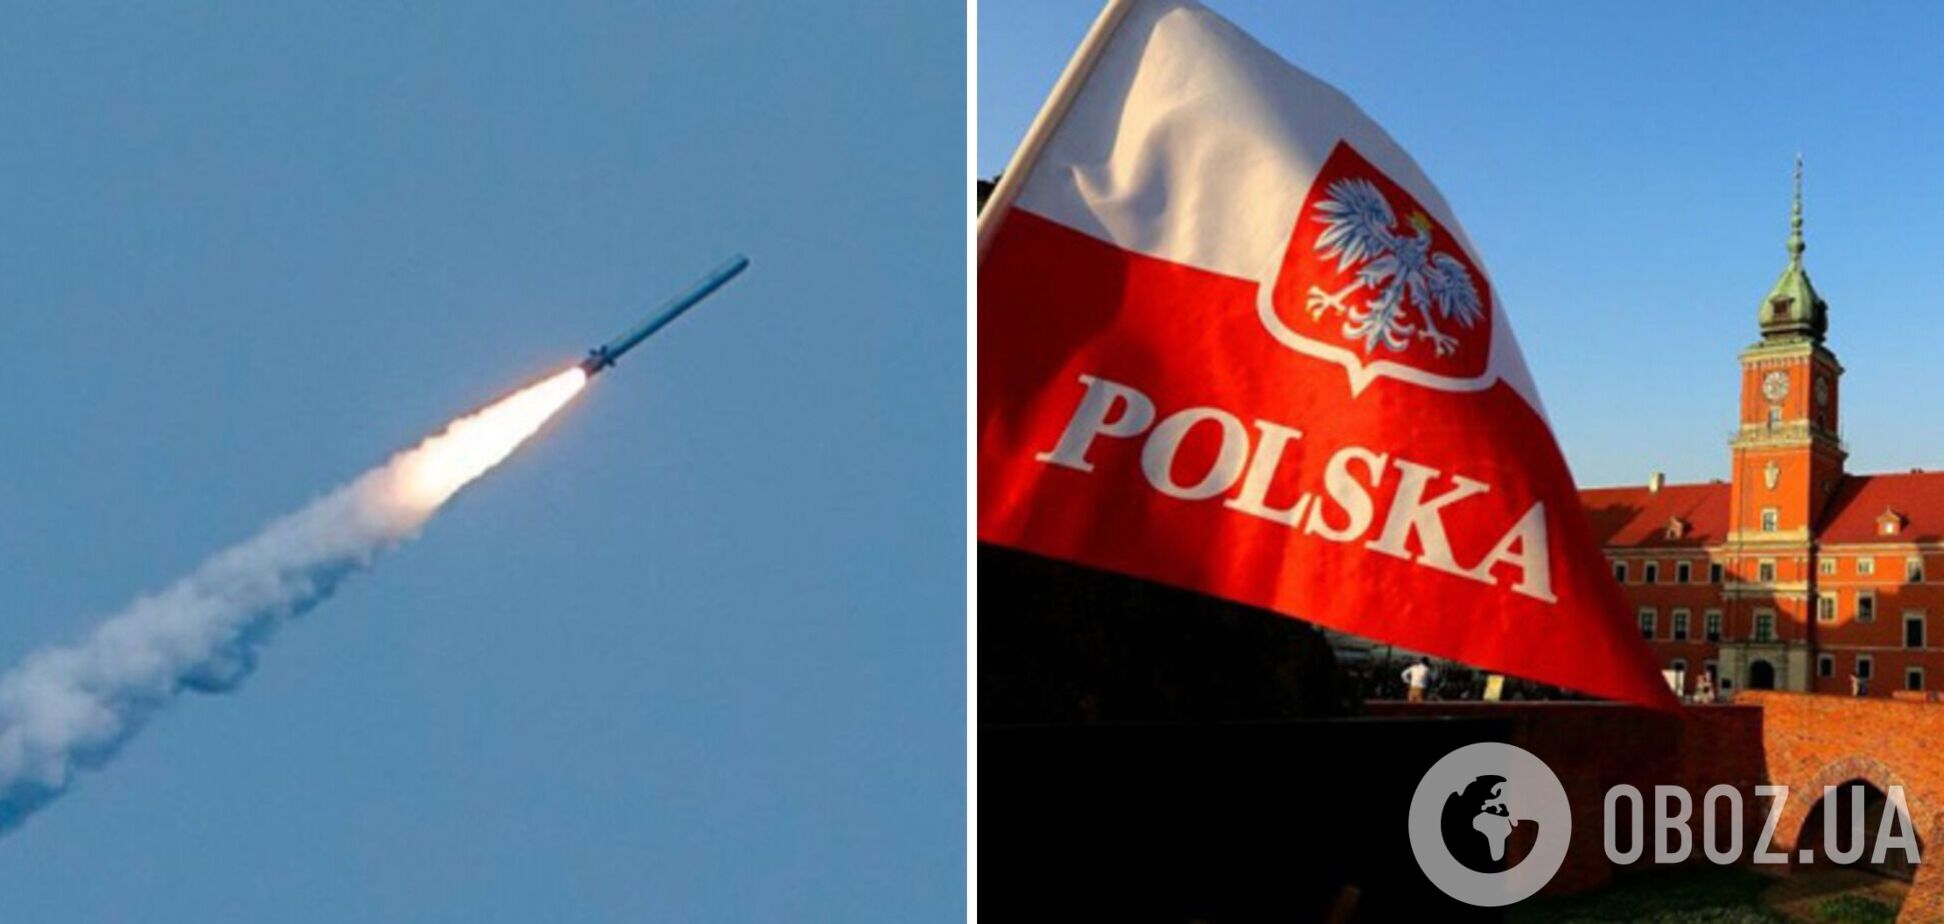 Селезнев объяснил, почему российская ракета неслучайно залетела на территорию Польши: какова цель агрессора